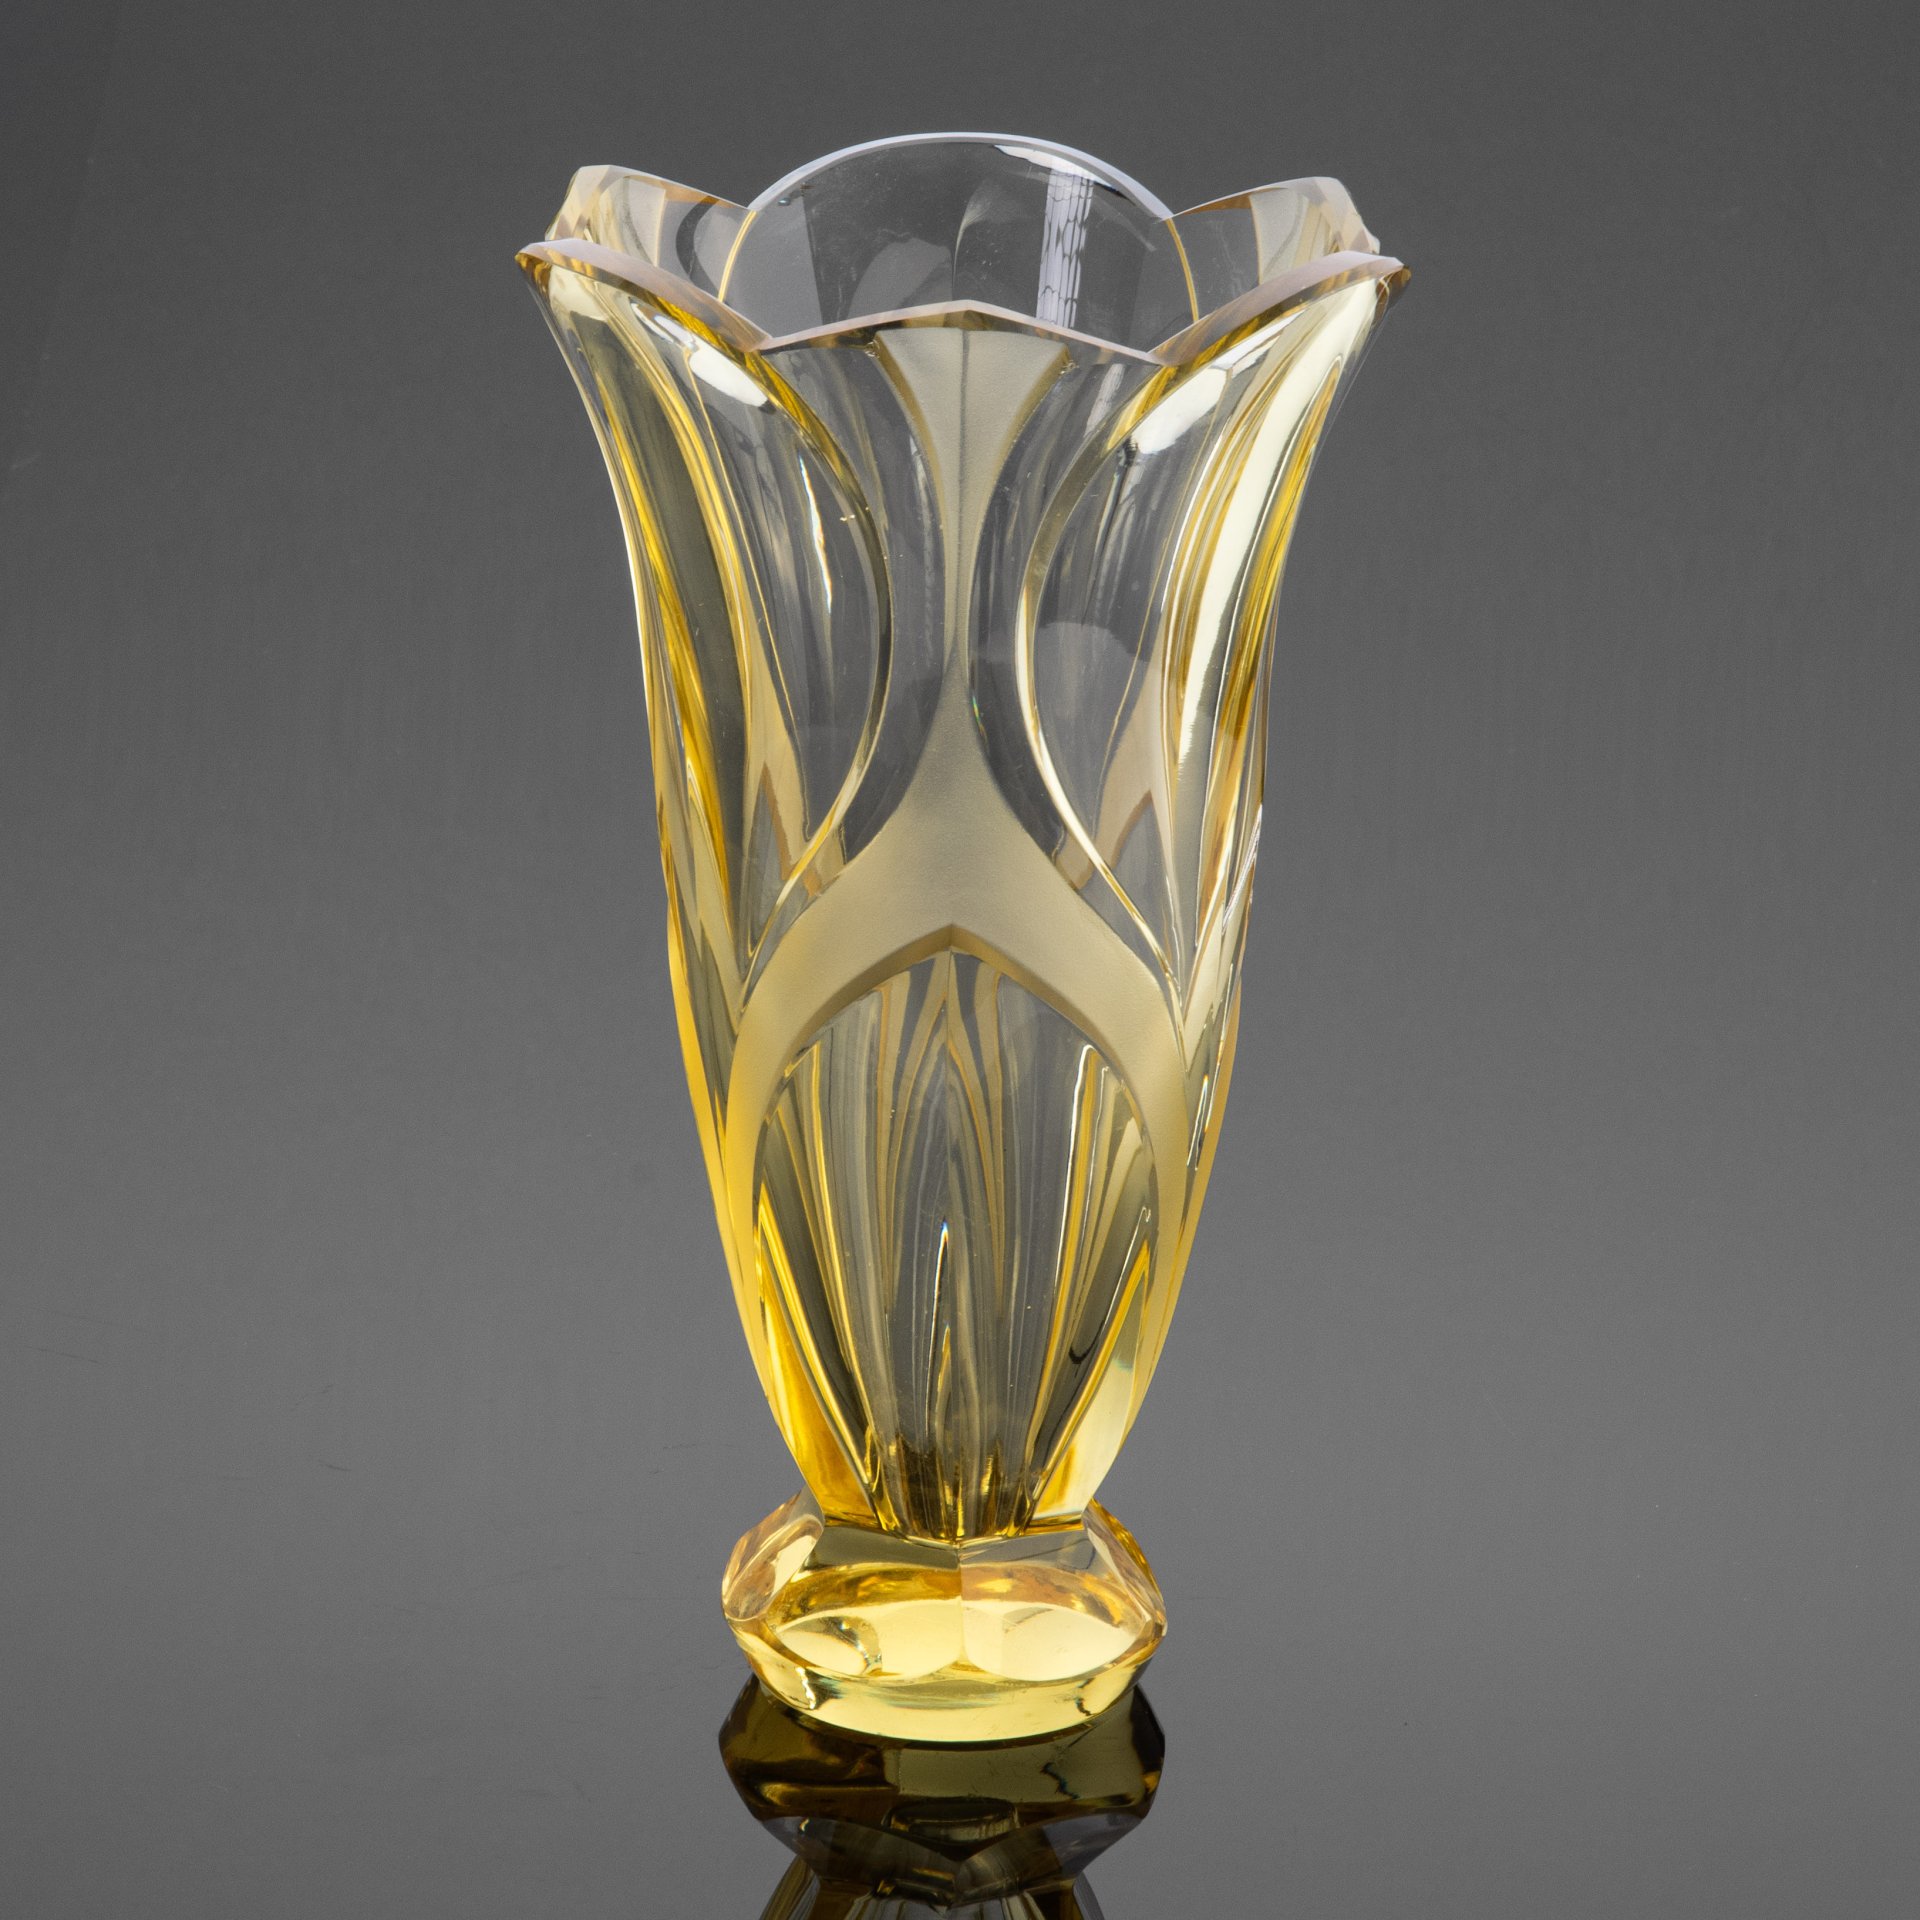 Ваза «Тюльпан» в стиле Ар-деко, стекло, гранение, матирование, Henry Moser & Cie (Мозер), Чехословакия, 1918-1922 гг.